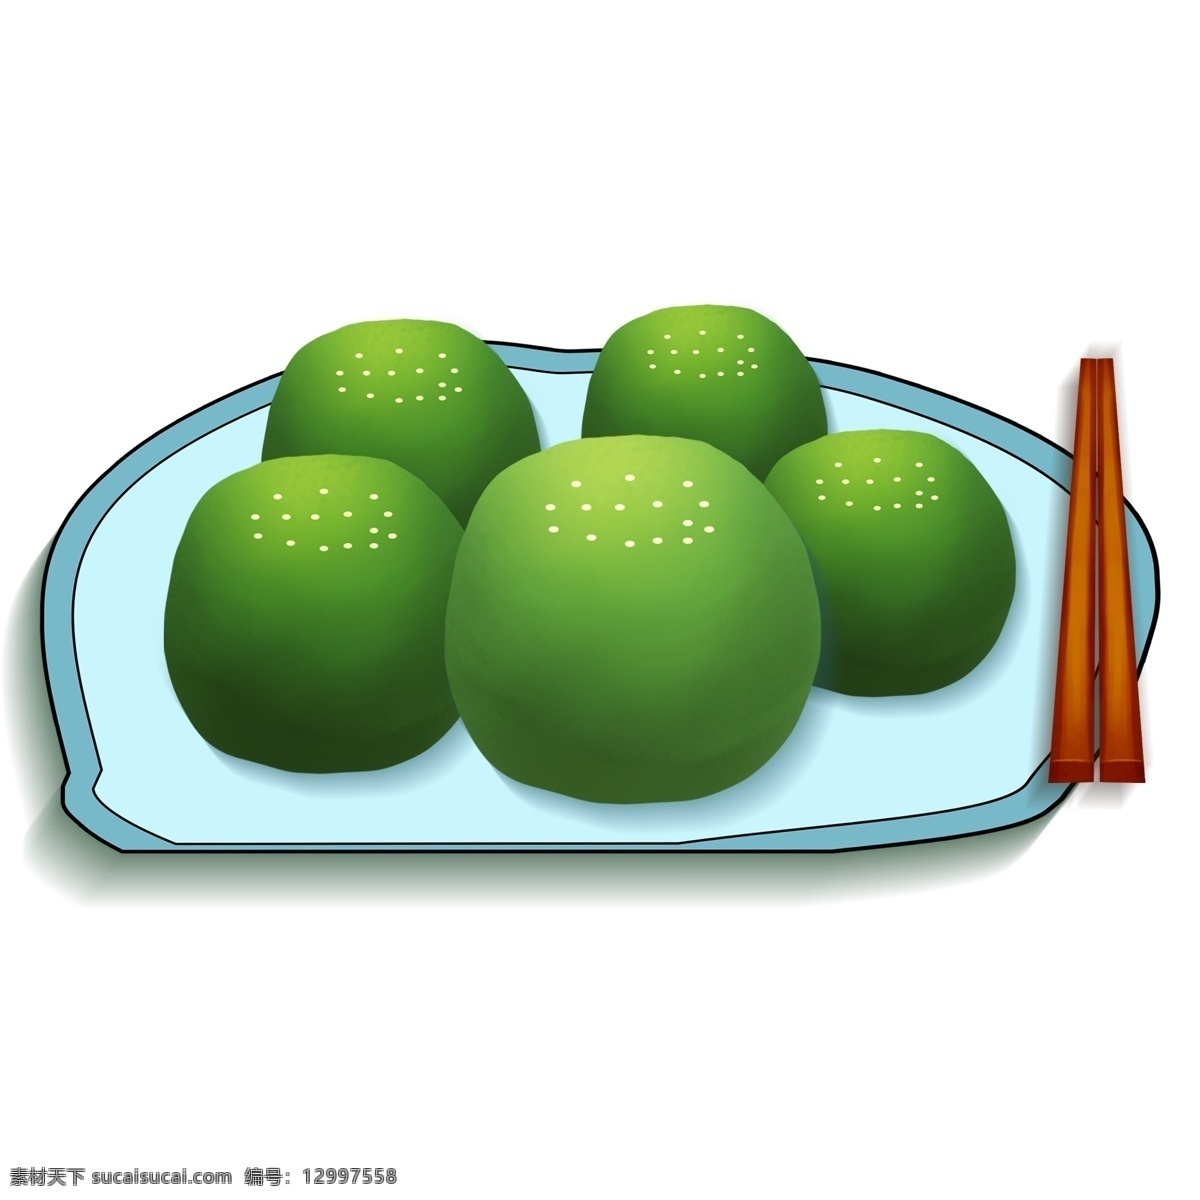 美味 青团 食物 装饰 元素 装饰元素 手绘 糯米 筷子 盘子